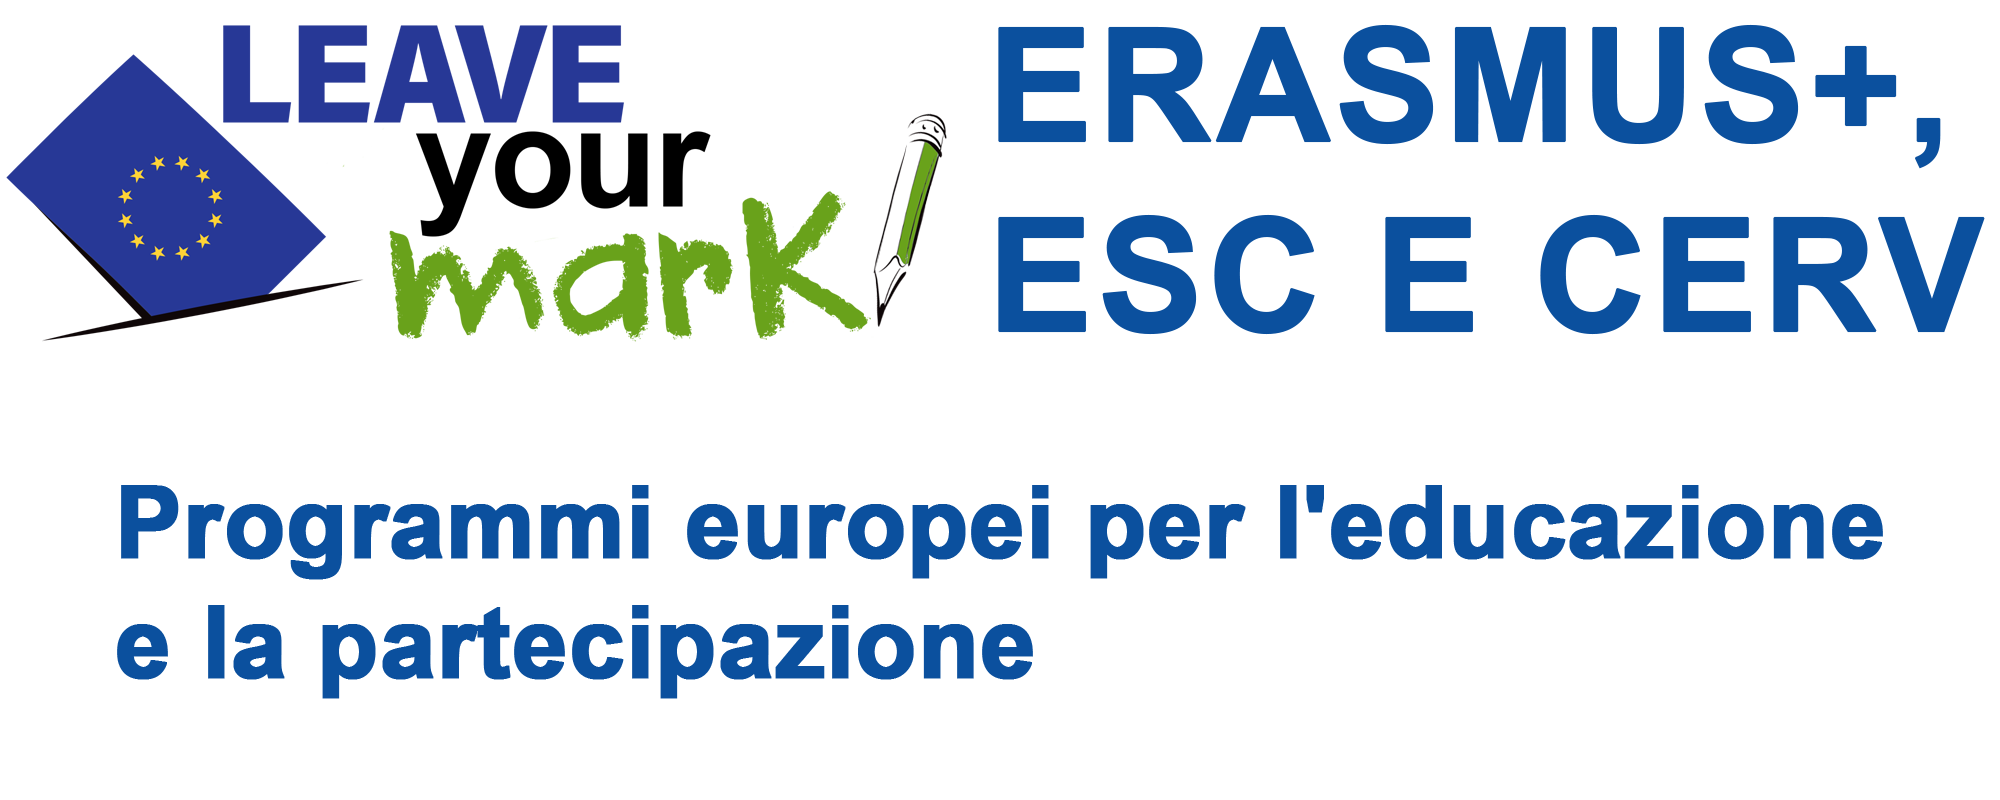 Erasmus+, ESC e CERV. Programmi europei per l'educazione e la partecipazione